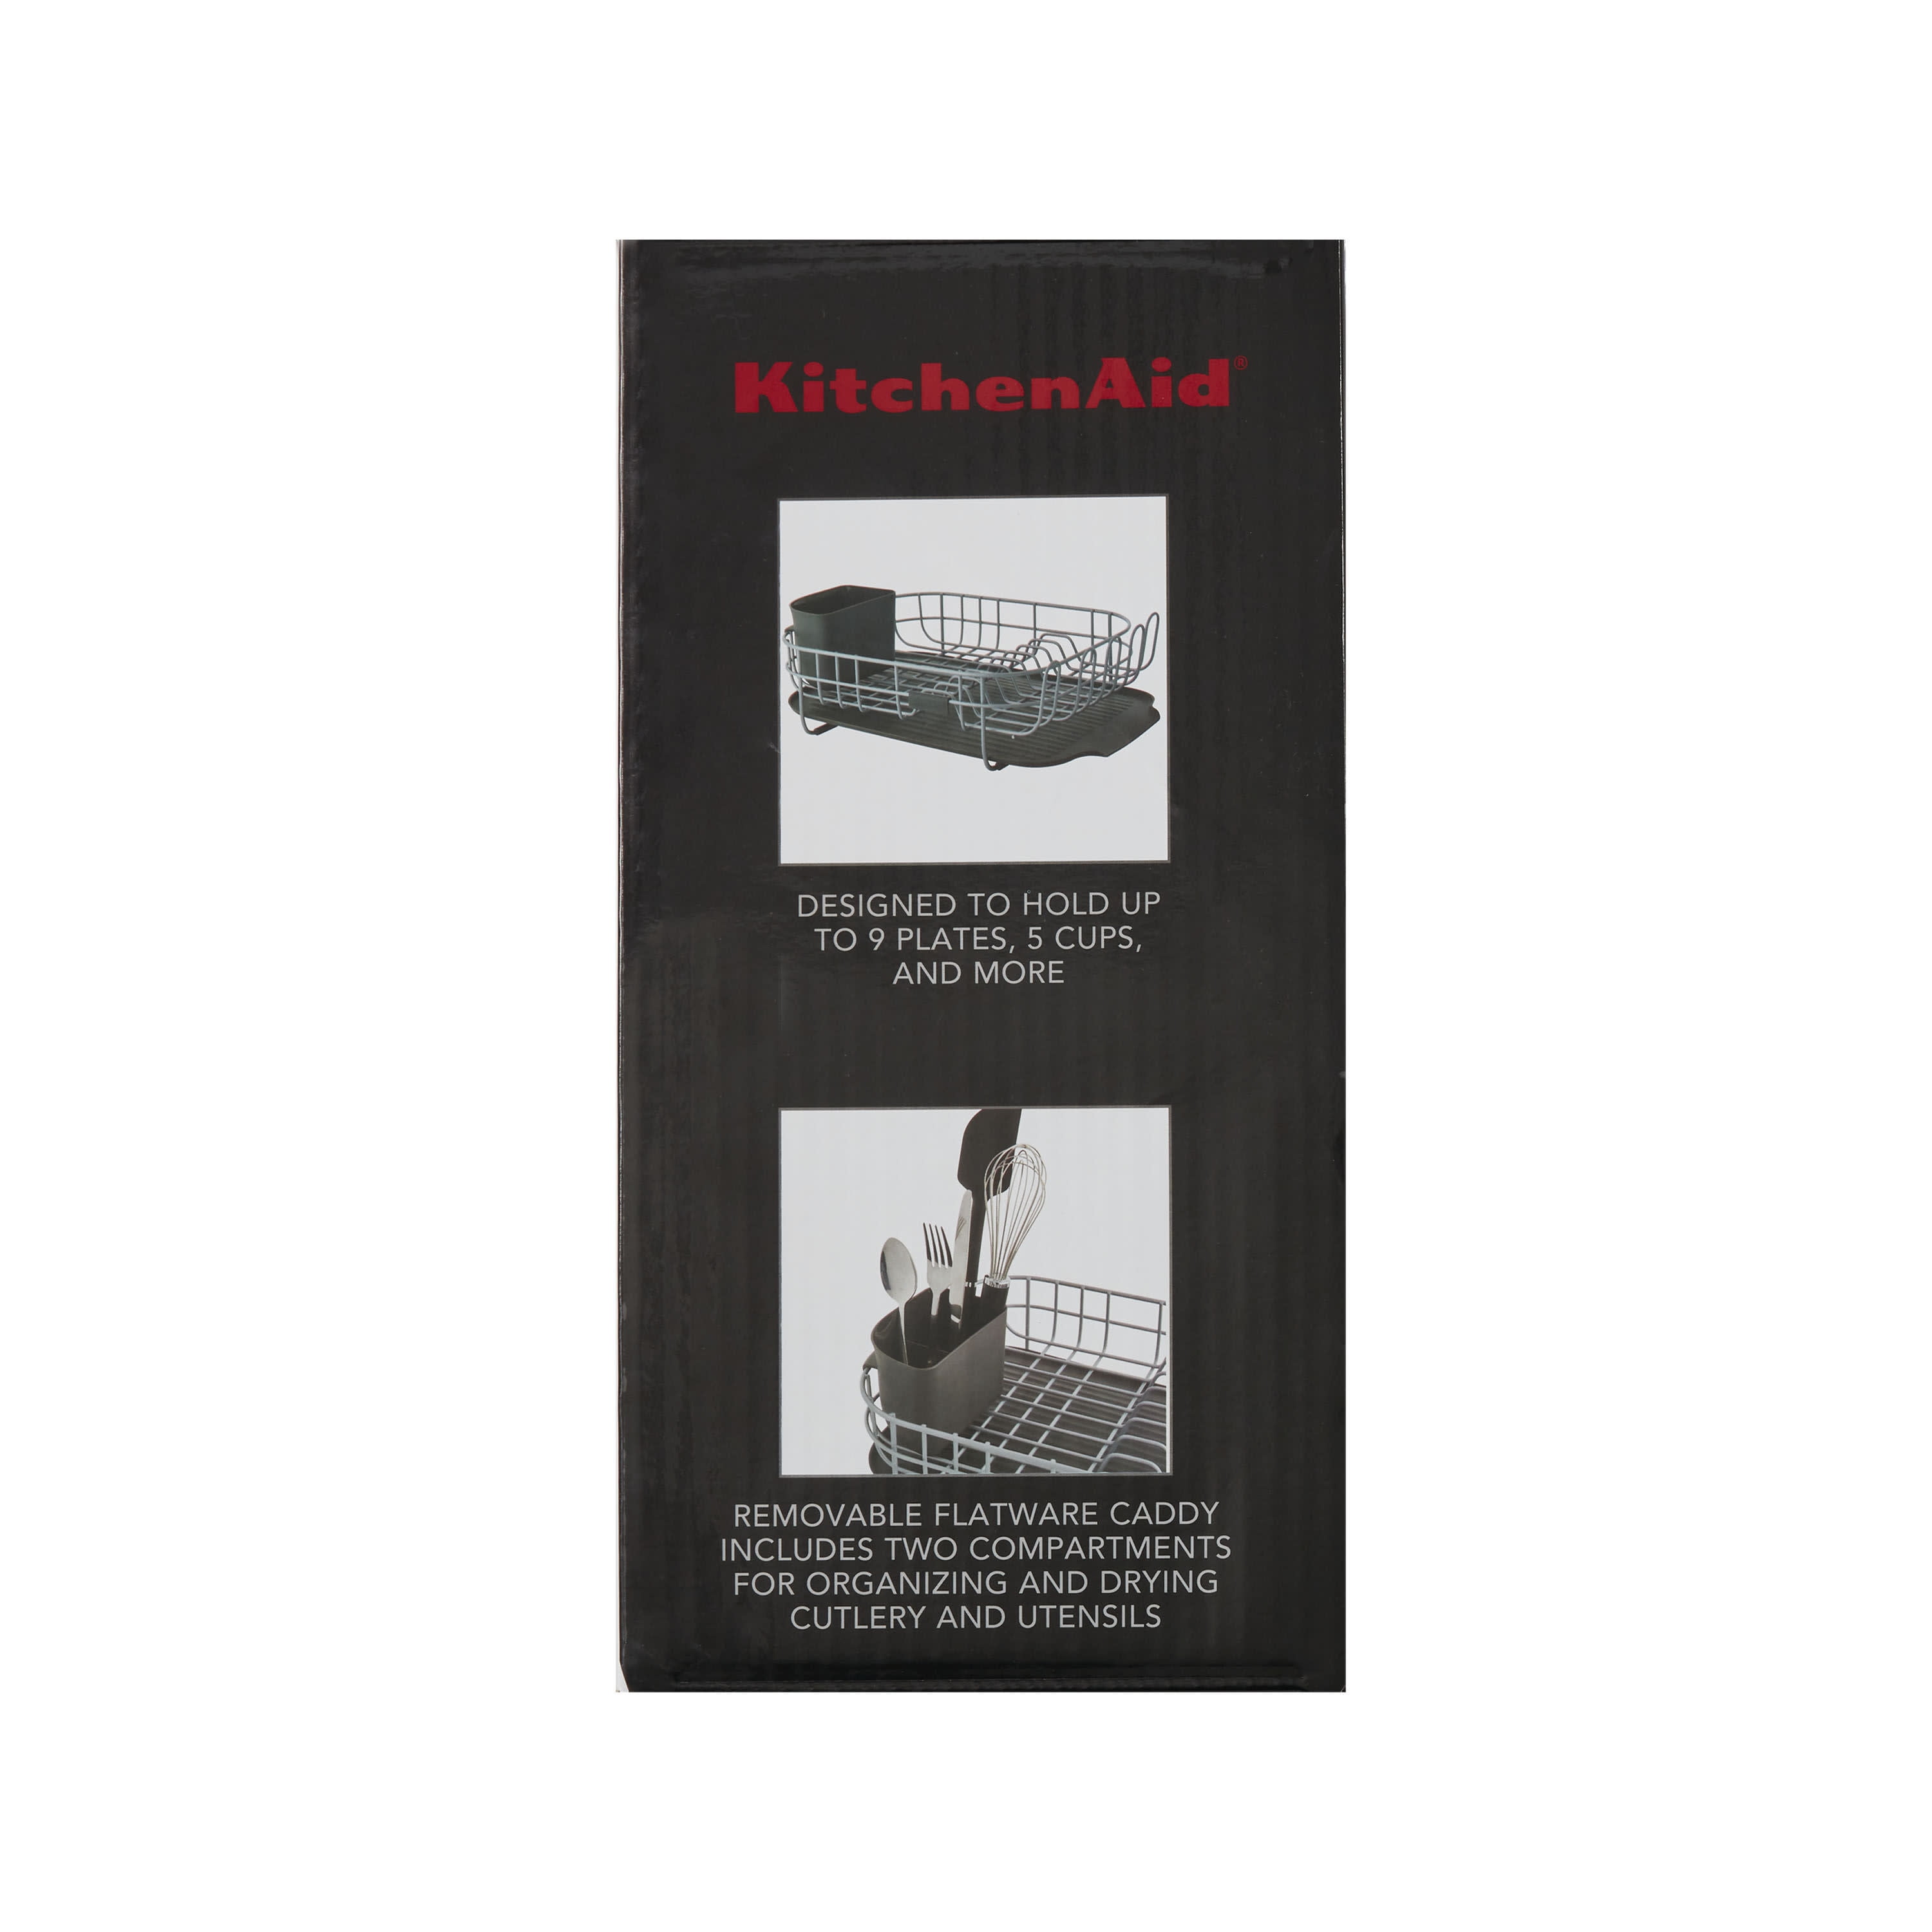 KitchenAid Aluminum Dish Rack Charcoal Gray 6.5 H x 12.2 W x 17.32 D